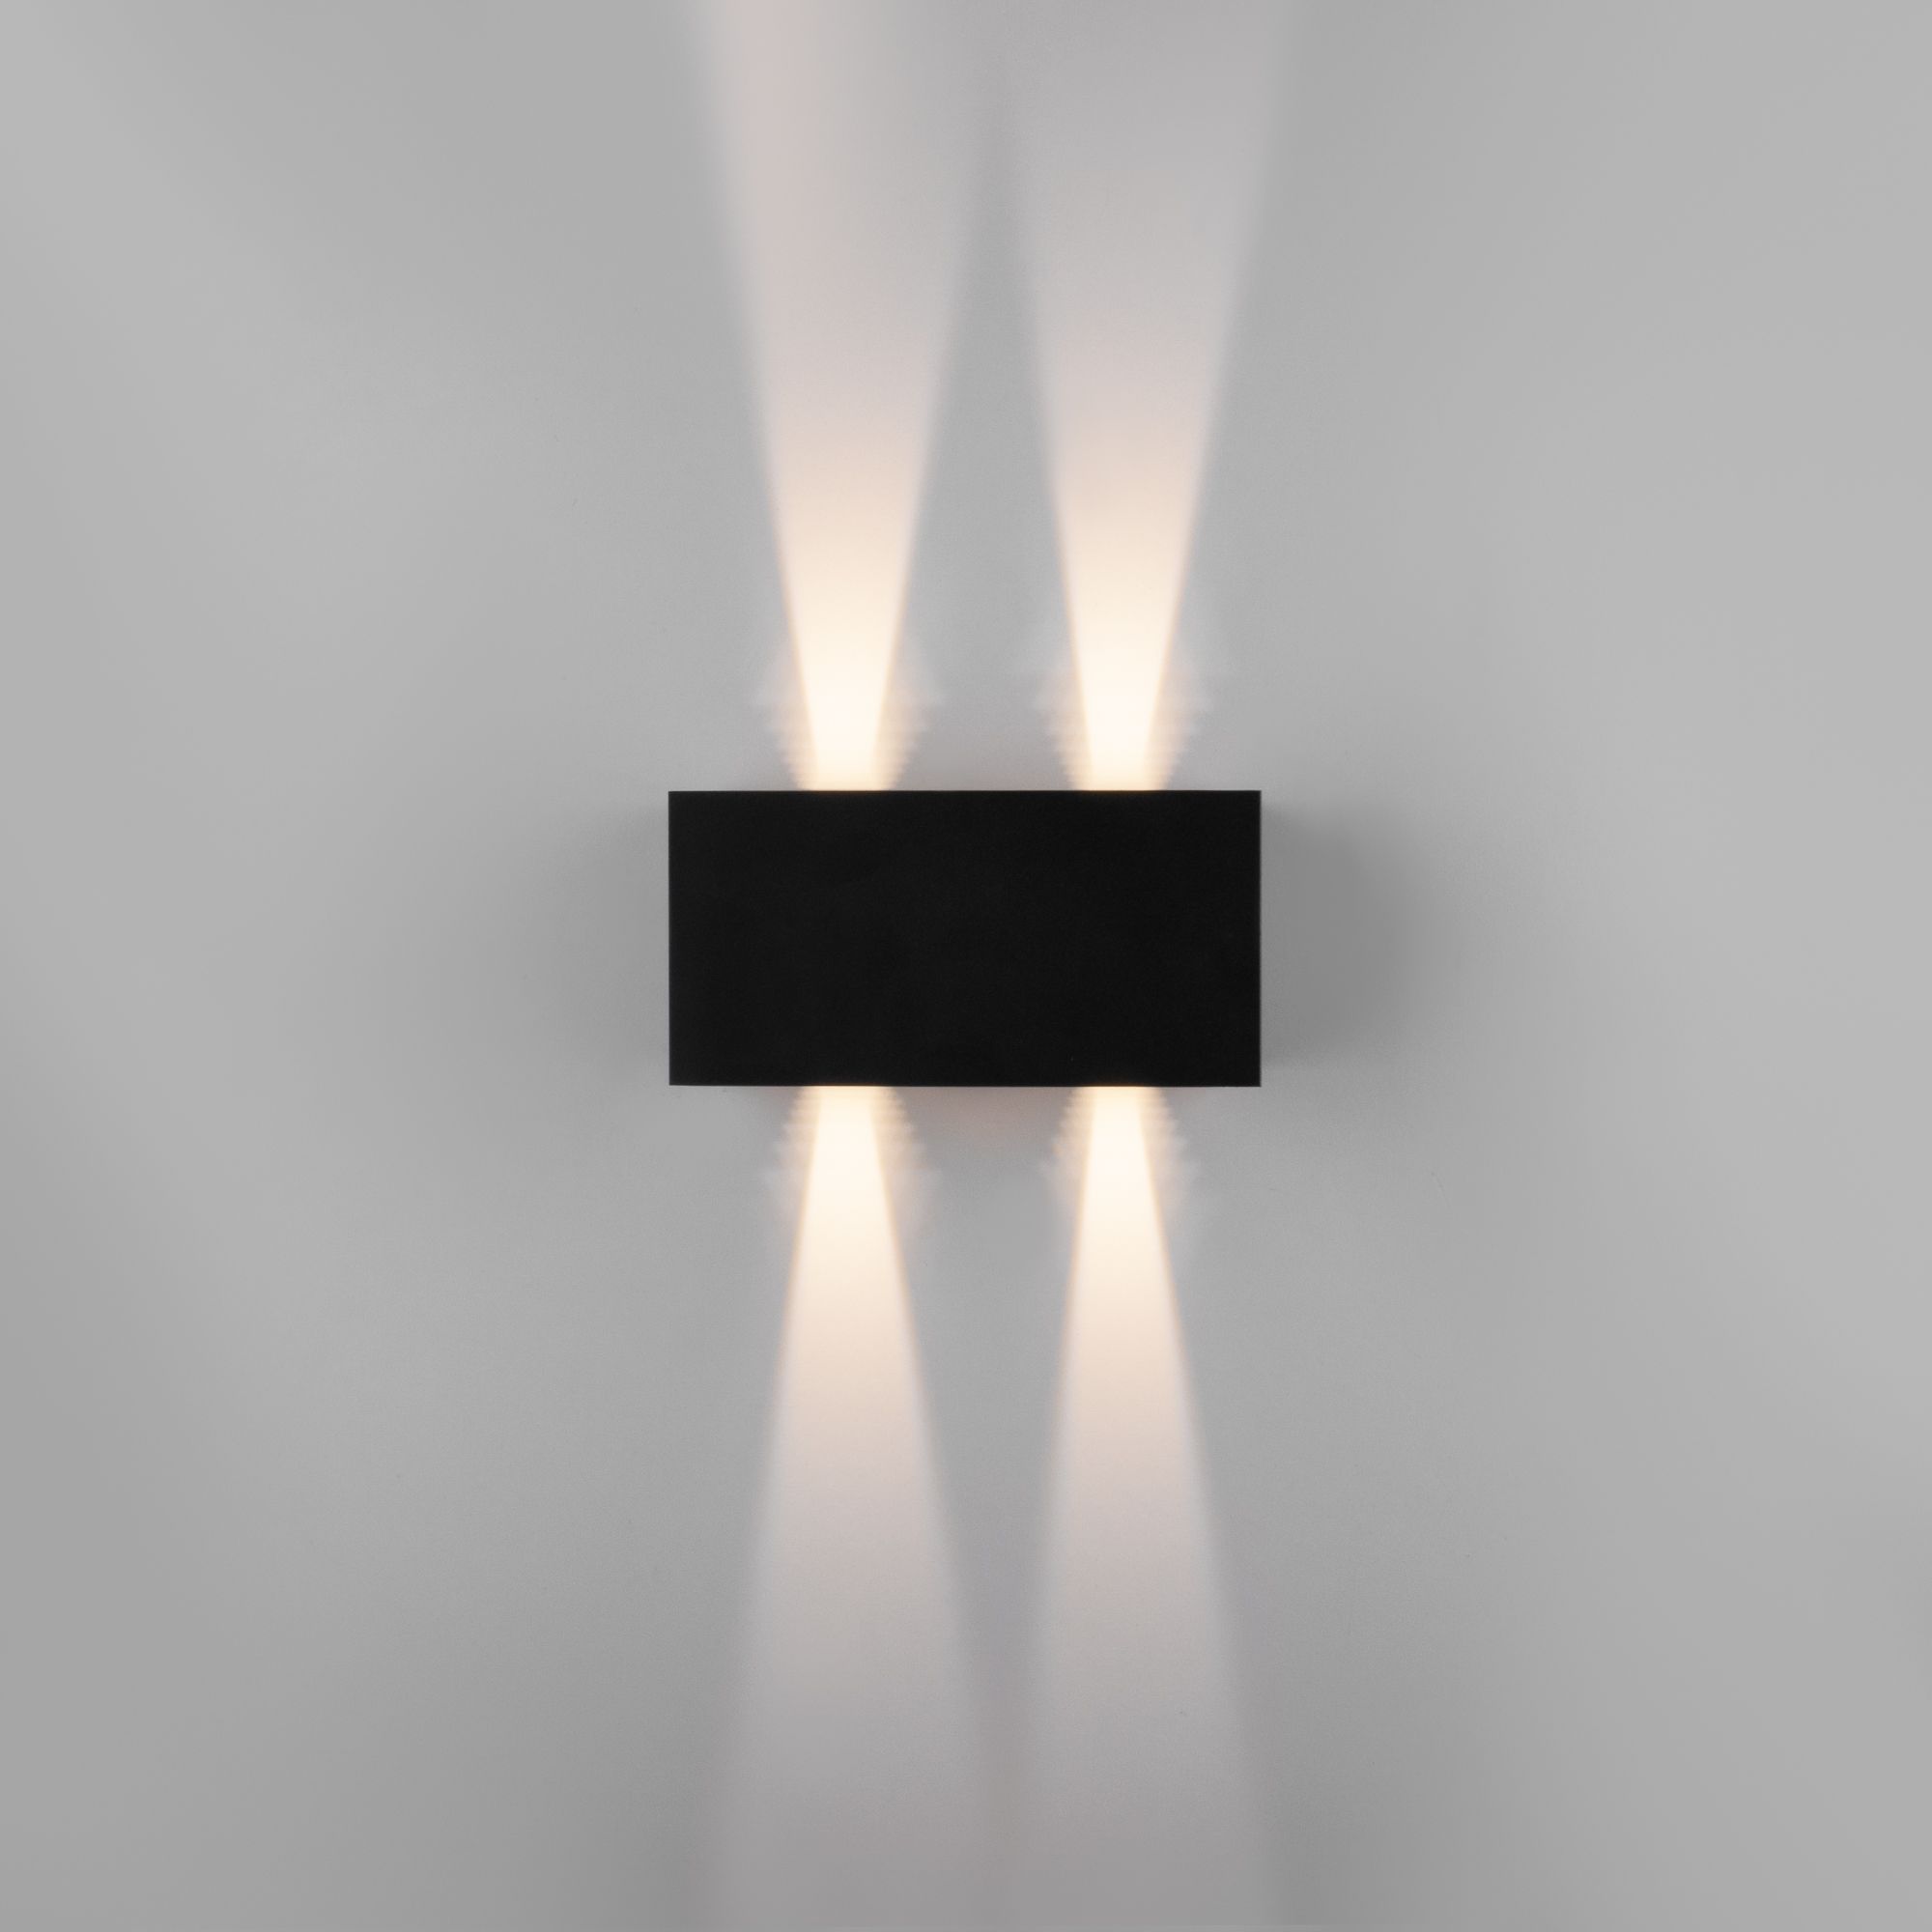 Уличный настенный светодиодный светильник WINNER DOUBLE LED IP54 35137/W черный